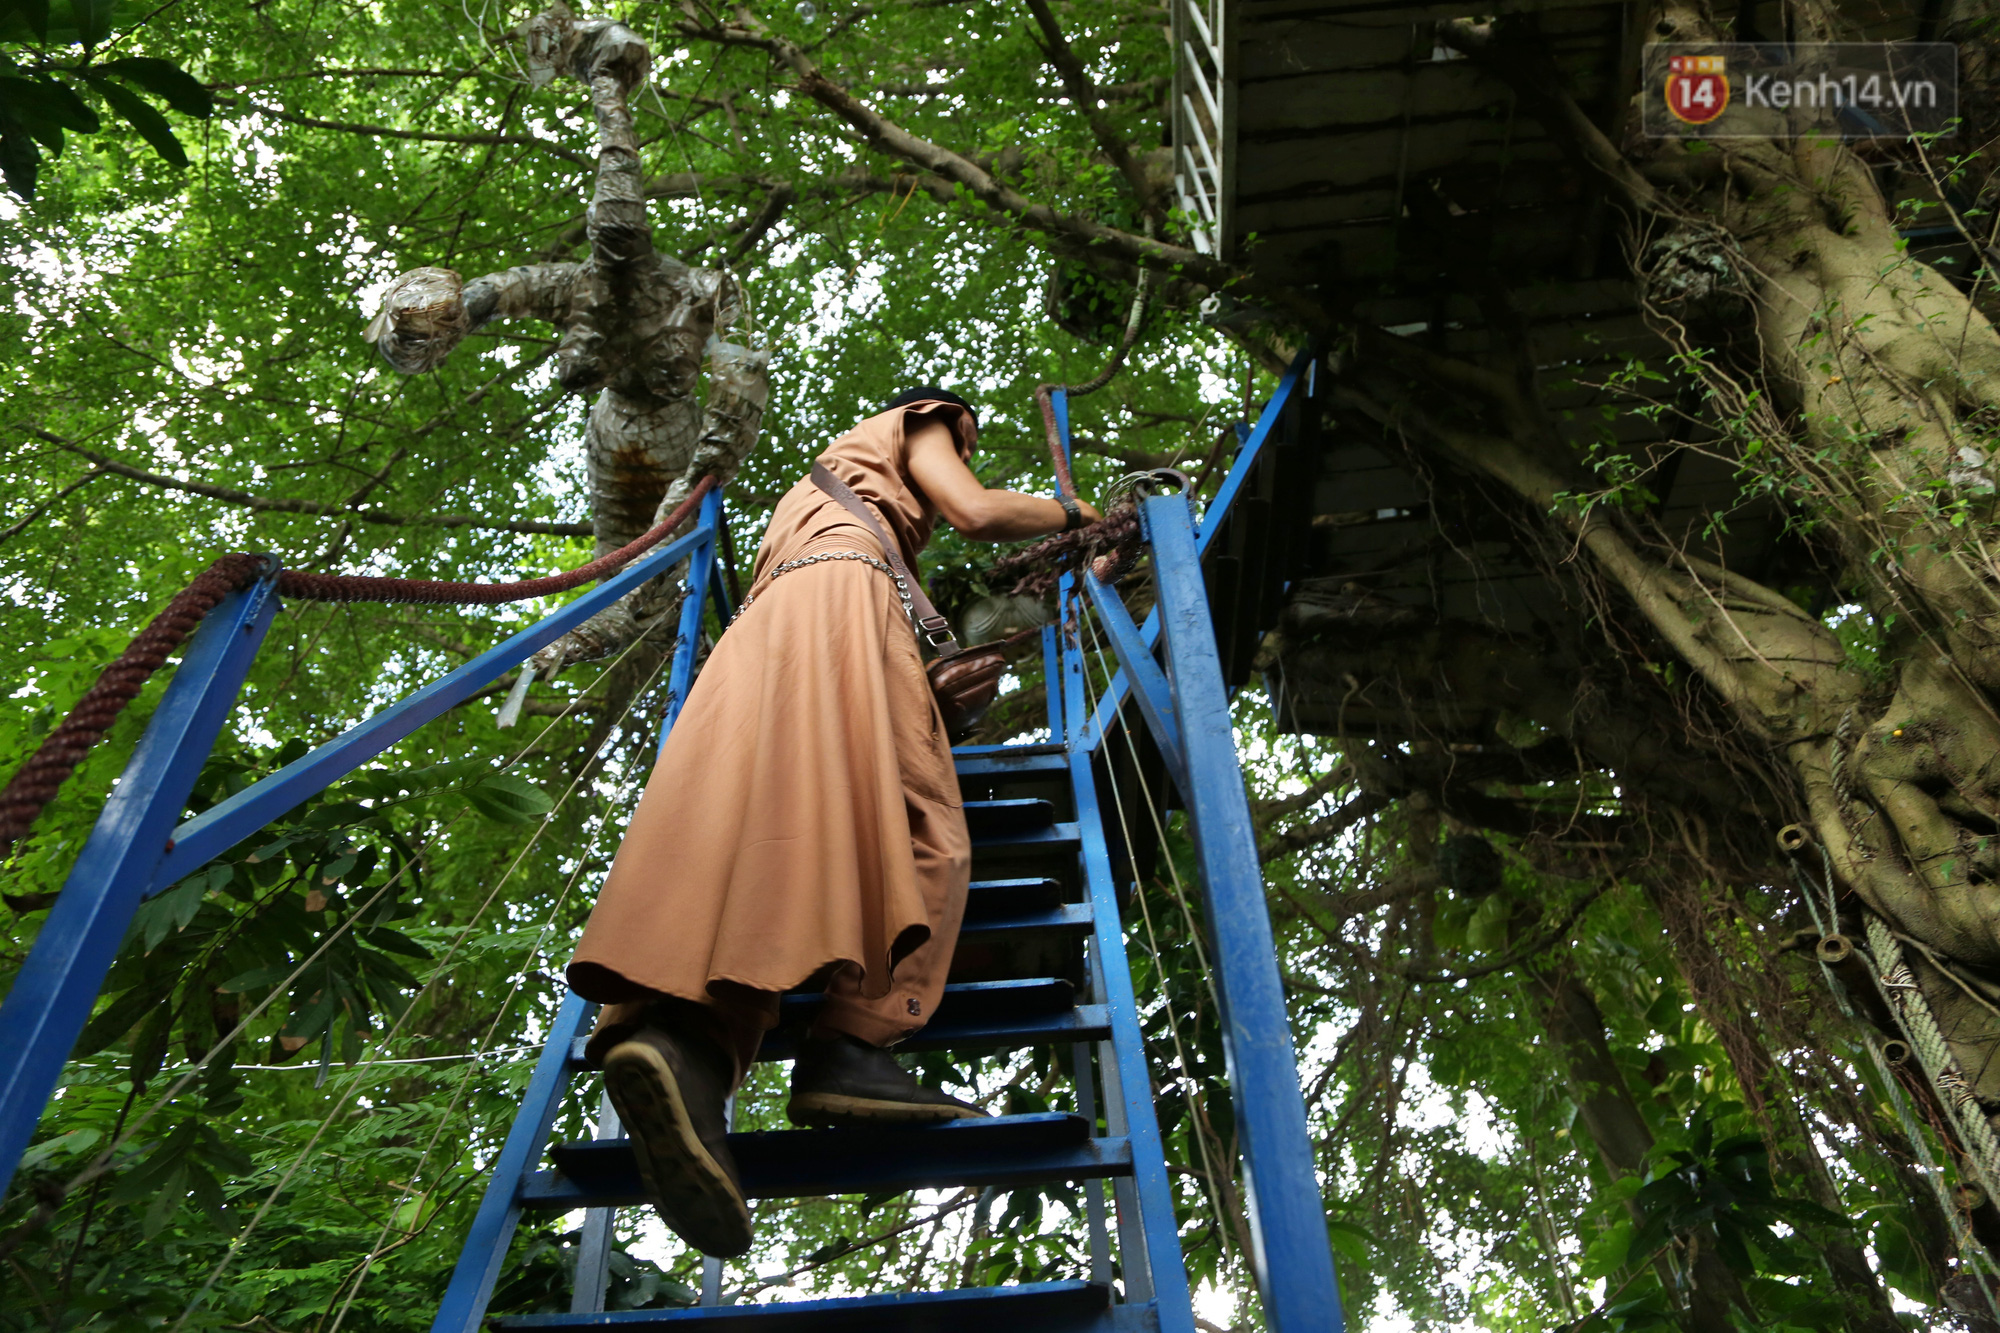 Ngay Hà Nội có một căn nhà cheo leo trên đỉnh ngọn cây của người họa sĩ 61 tuổi: Gần 20 năm trồng và đợi cây lớn - Ảnh 3.